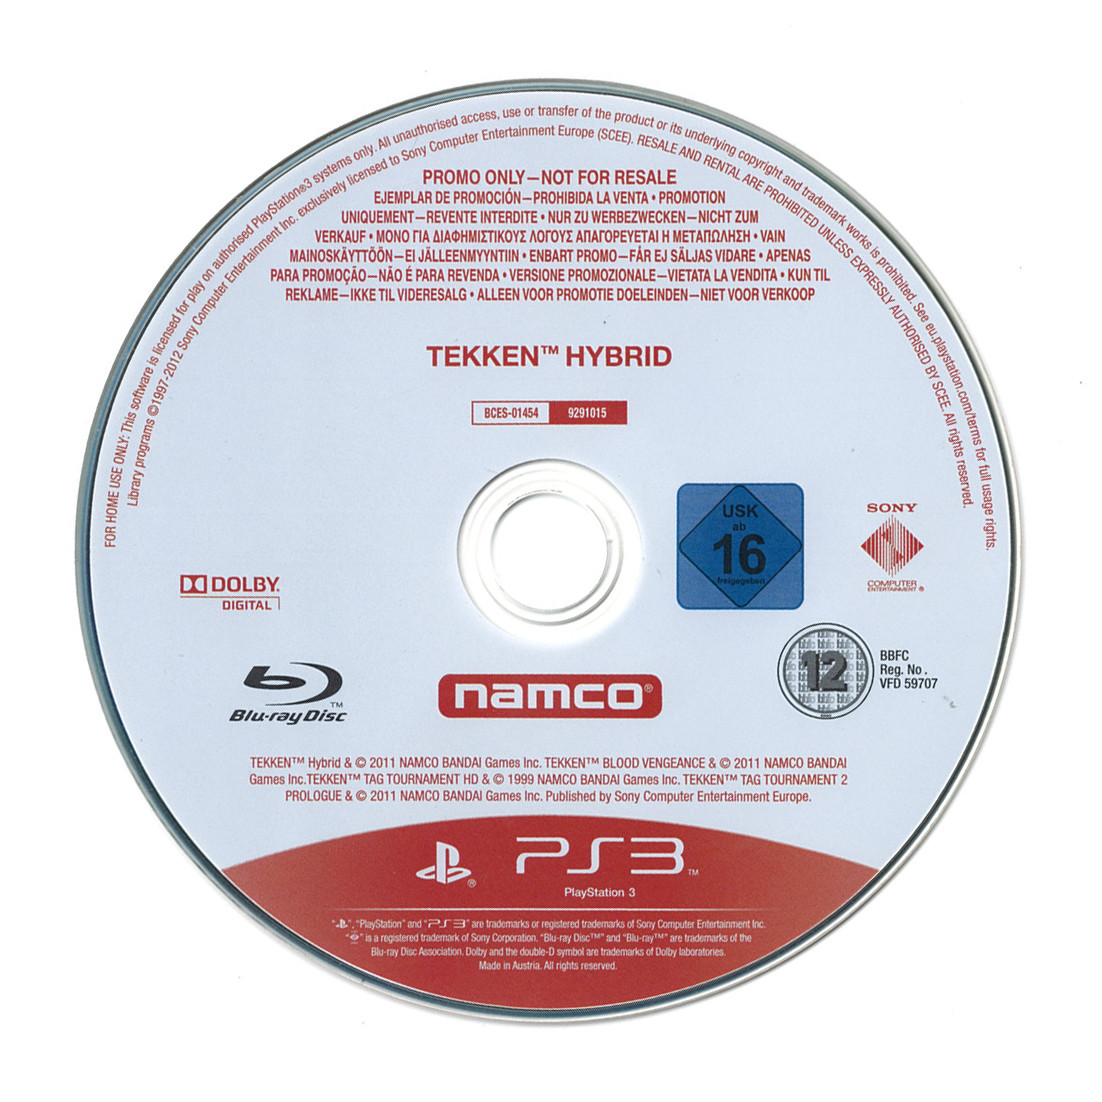 Tekken Hybrid (promo losse disc)